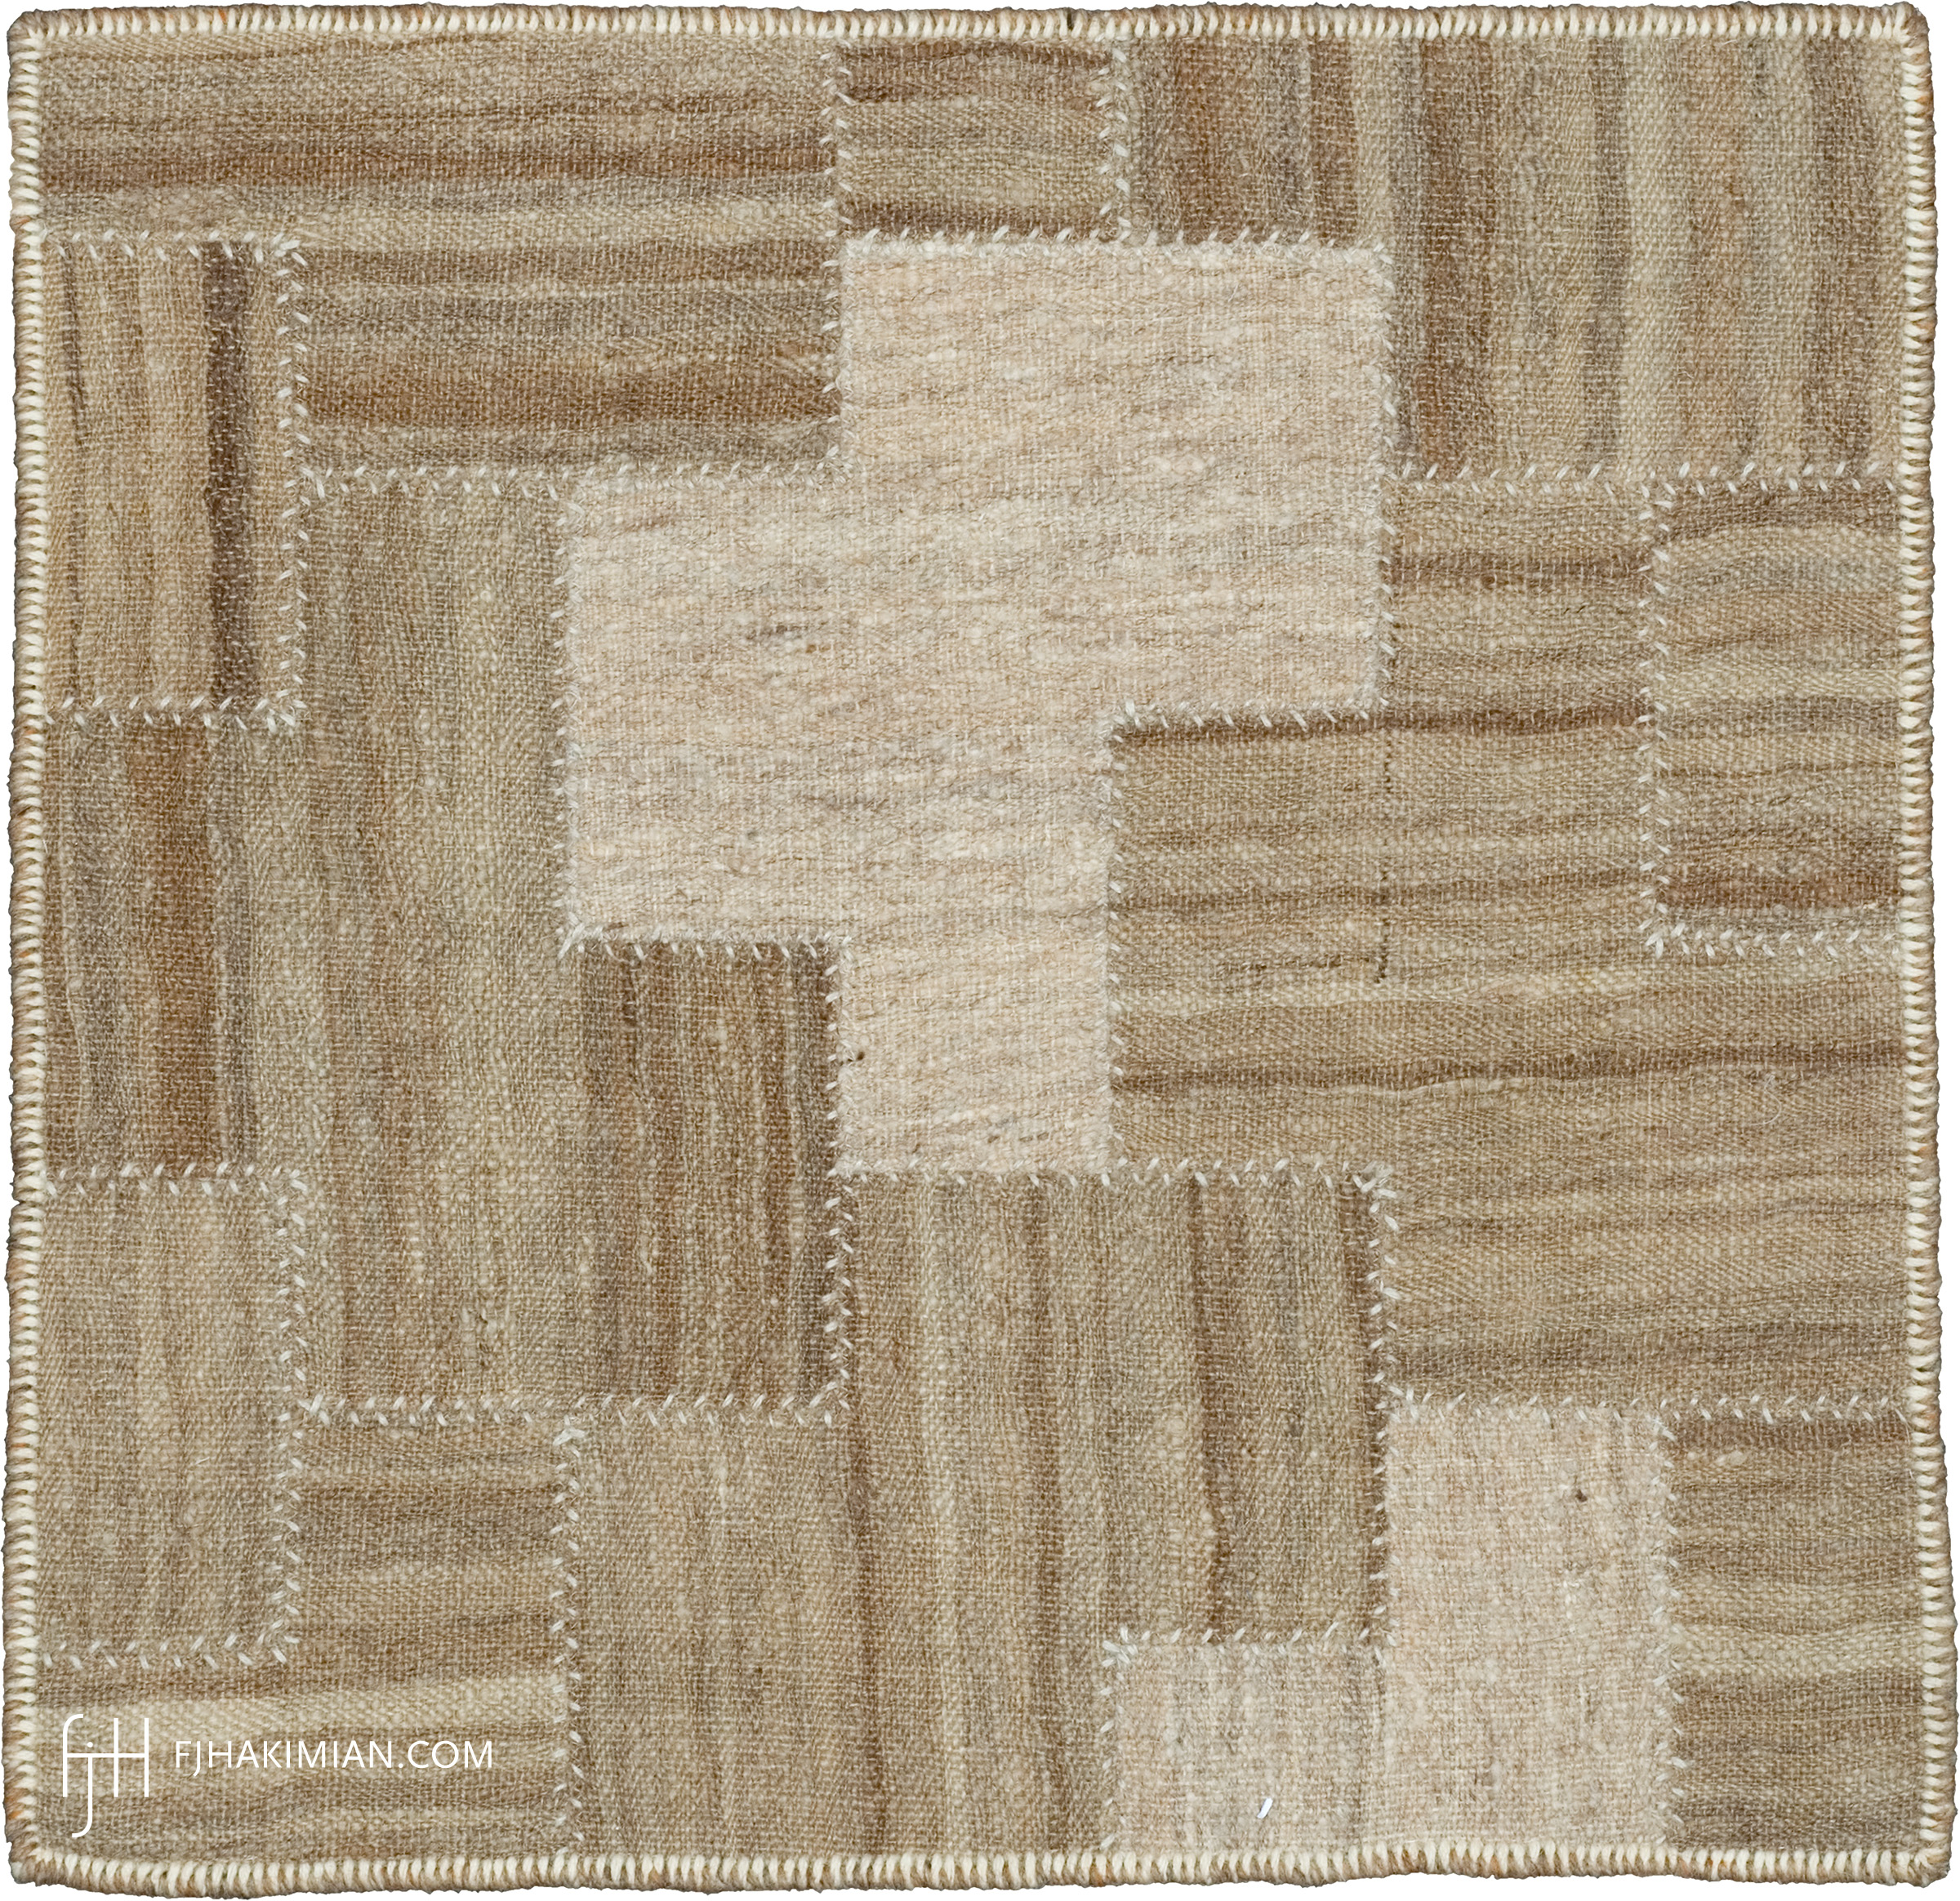 FJ Hakimian | 37590 | Custom Carpet